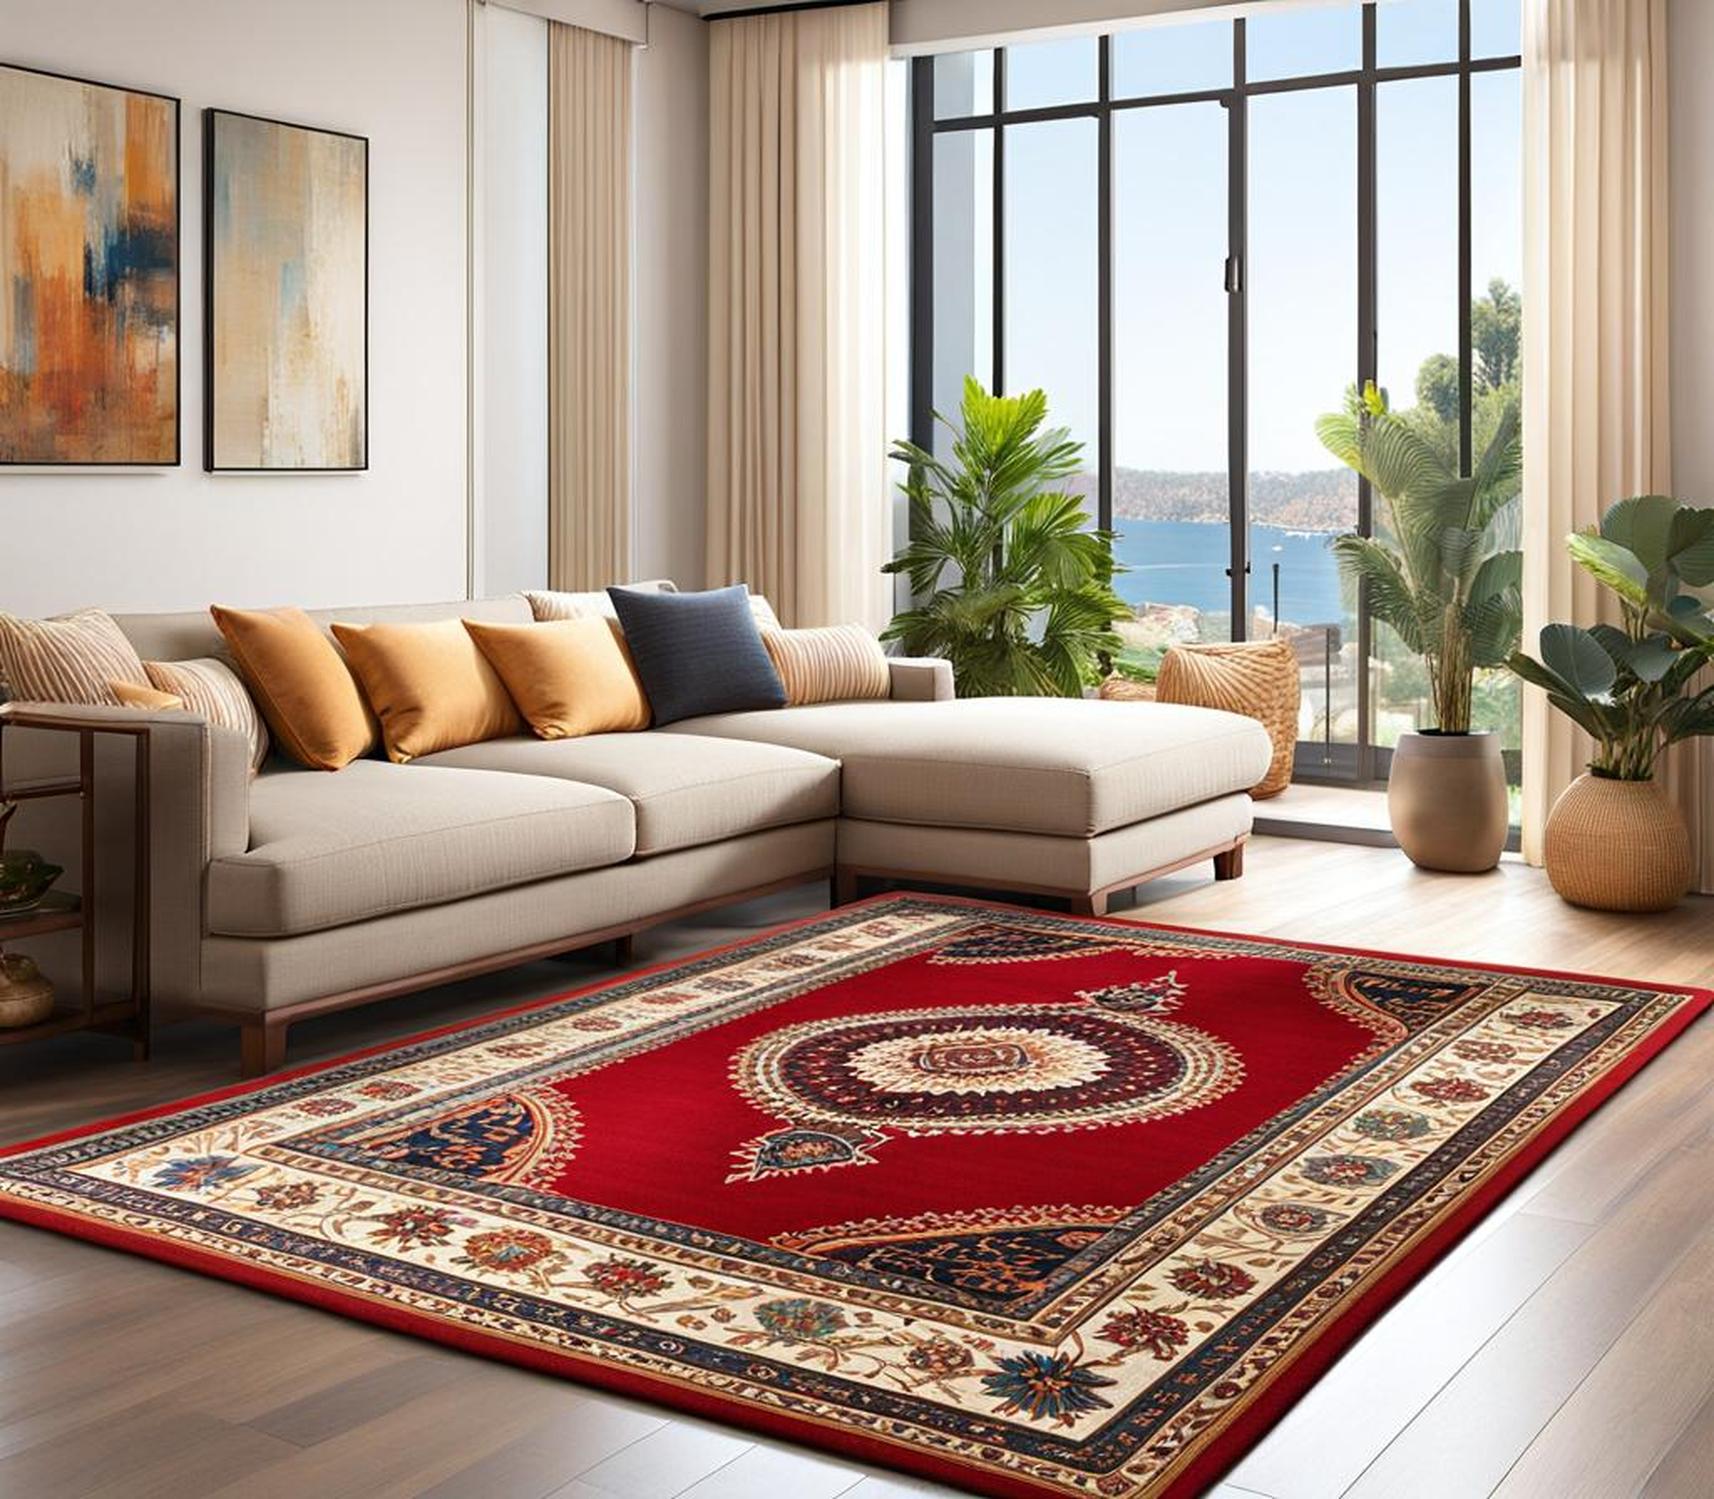 standard living room rug size